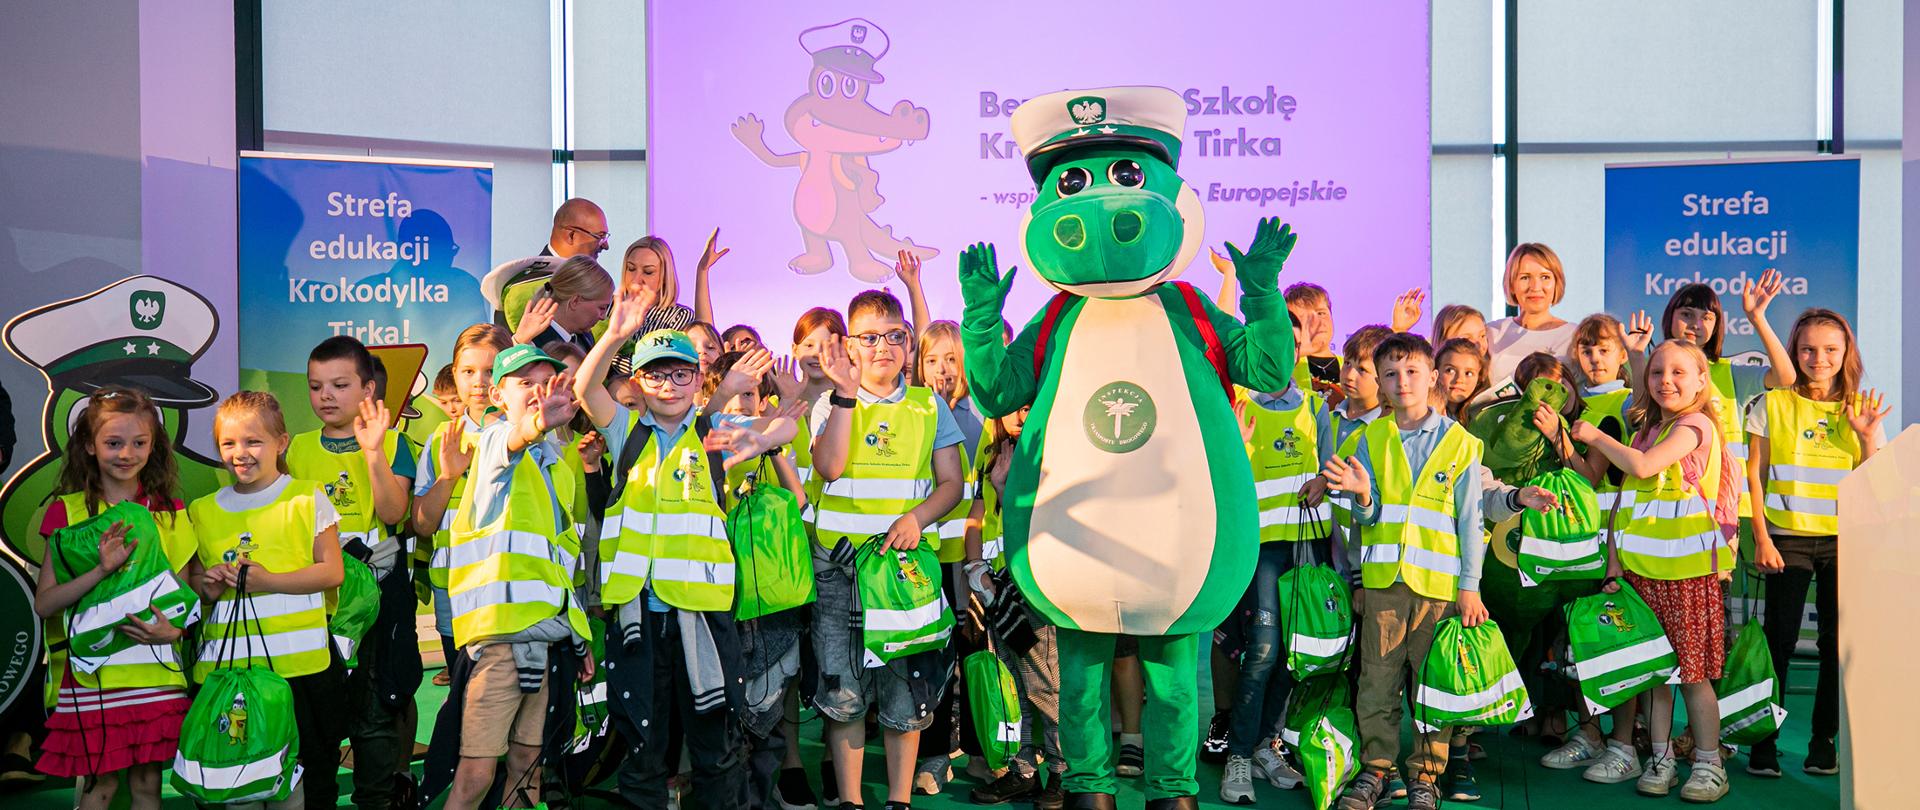 Dzieci stoją na scenie - na zielonej wykładzinie. W środku między nimi stoi maskotka Krokodylek Tirek. Dzieci machają, mają odblaskowe kamizelki i plecaki z wizerunkiem Krokodylka Tirka. Z tyły ścianki z napisem Strefa edukacji Krokodylka Tirka!